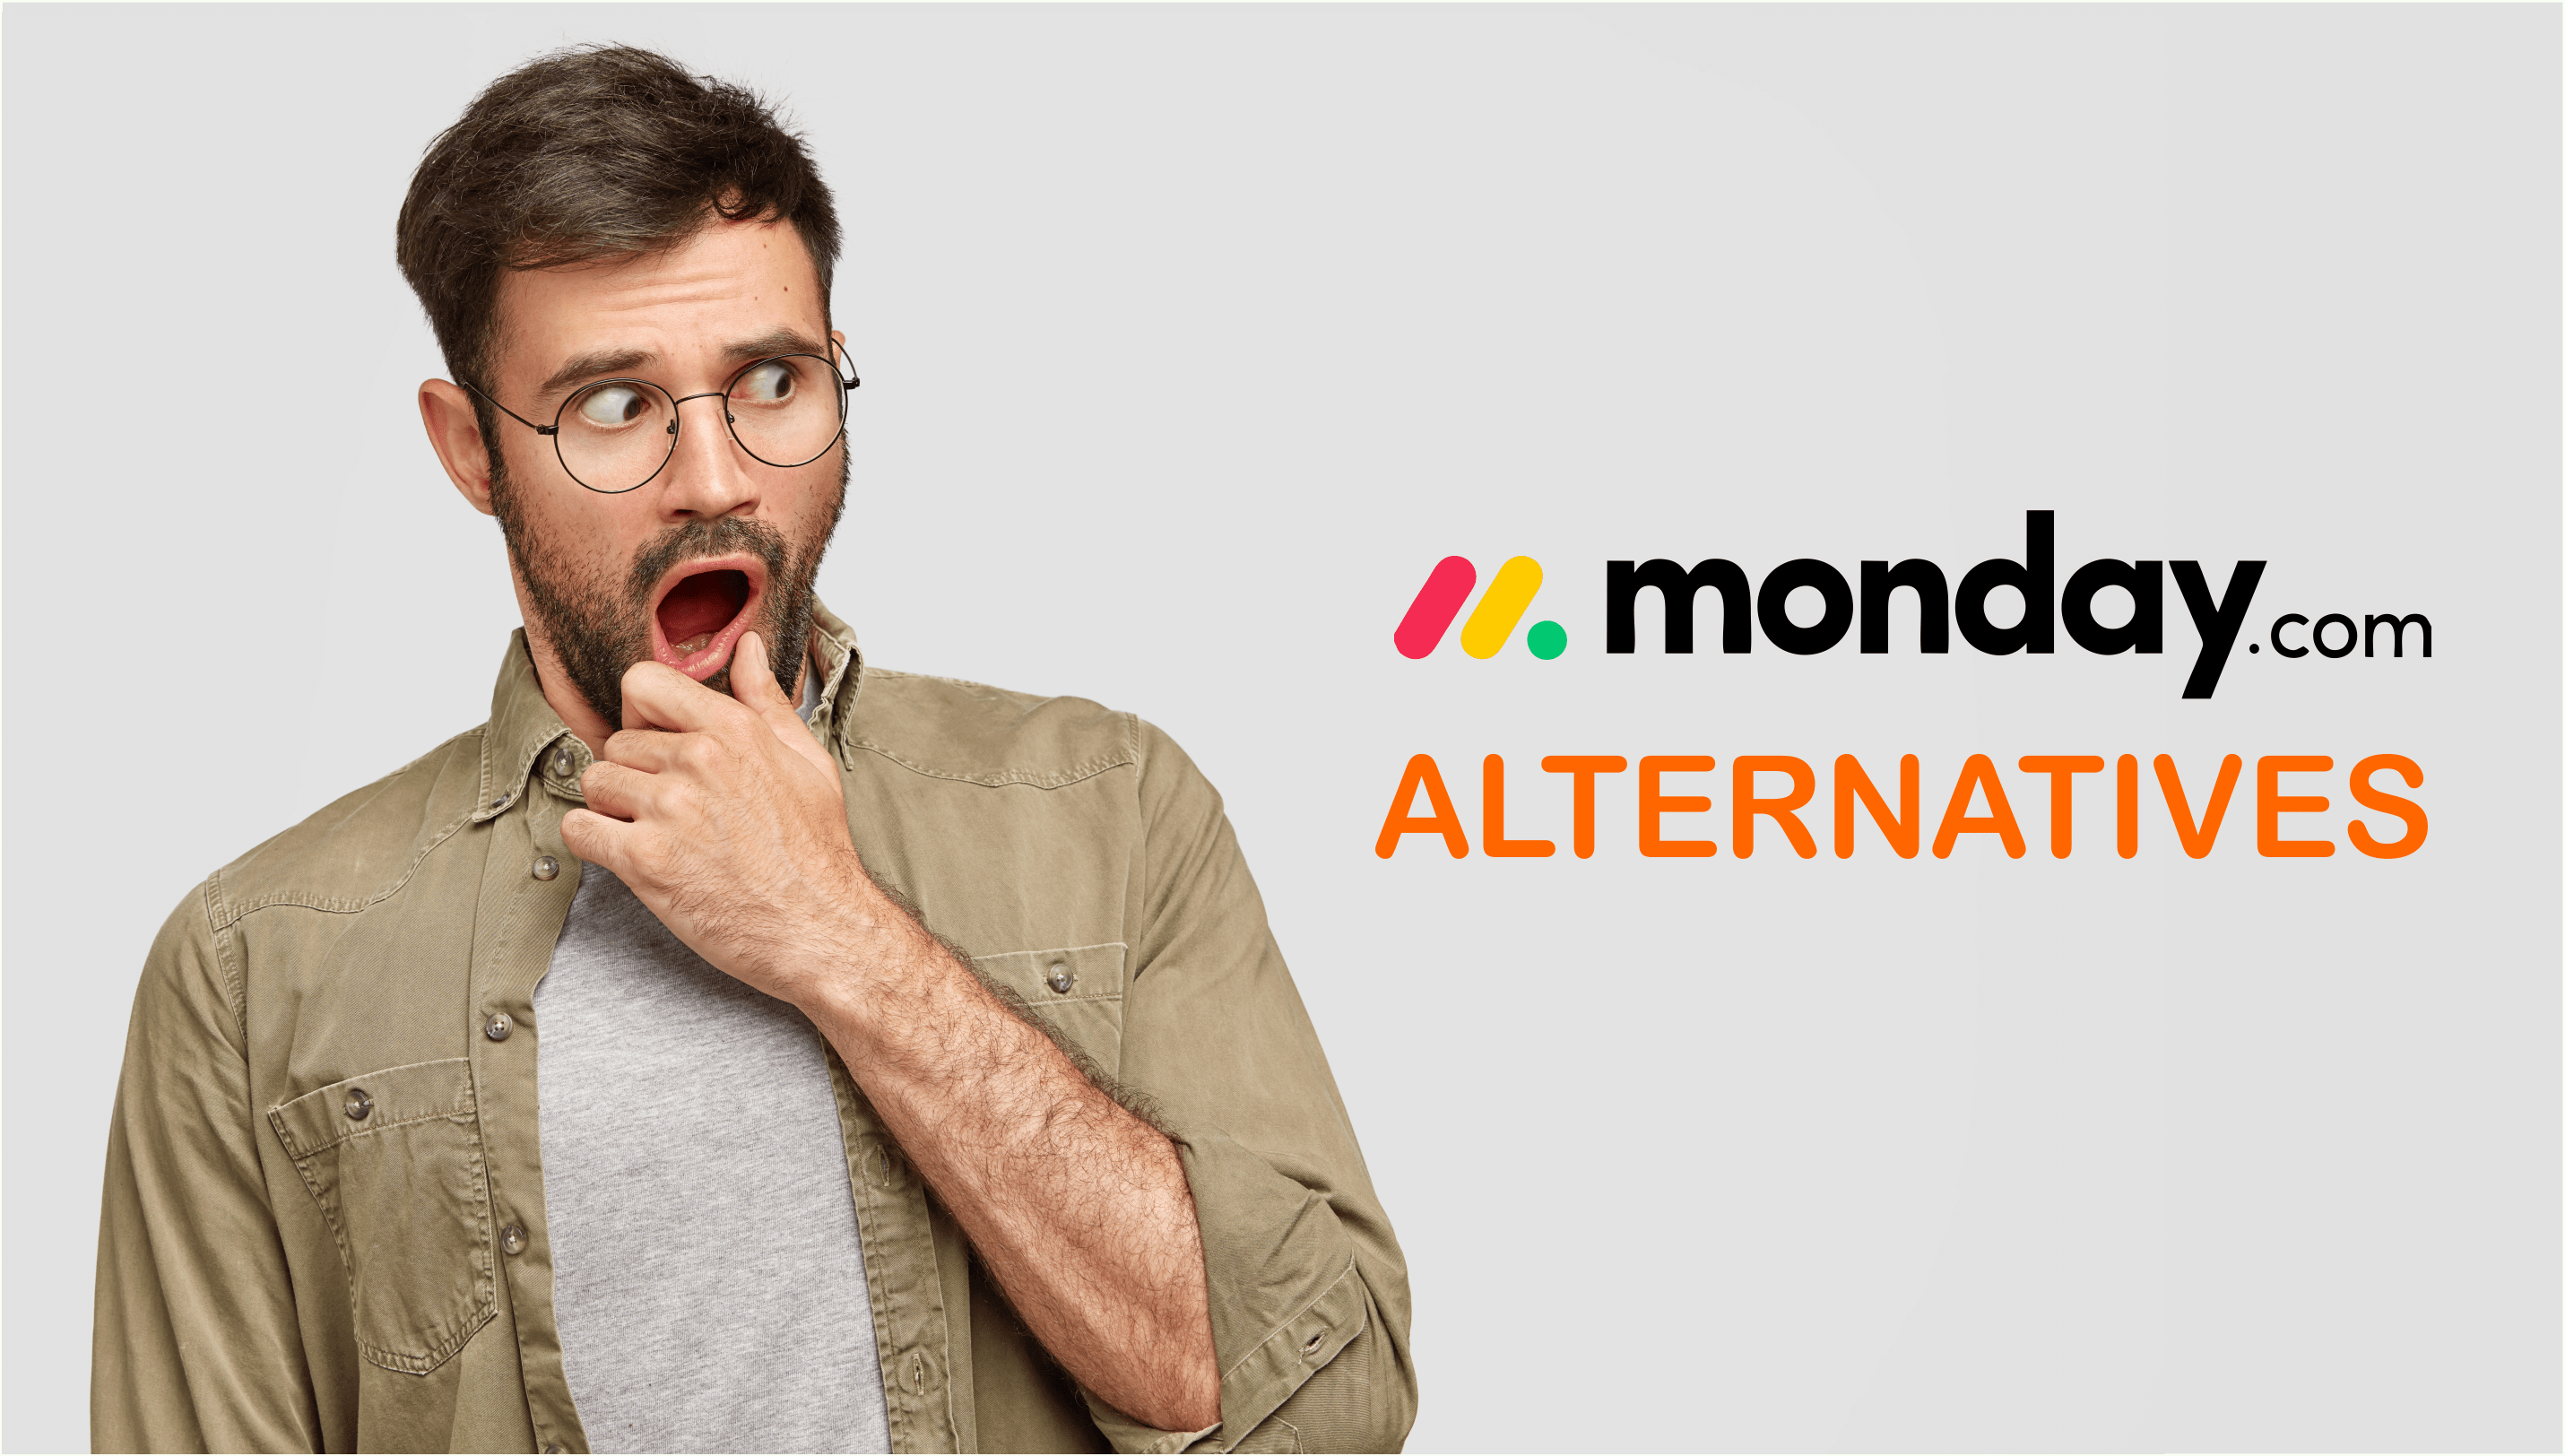 Top 10 Alternatives to Monday.com